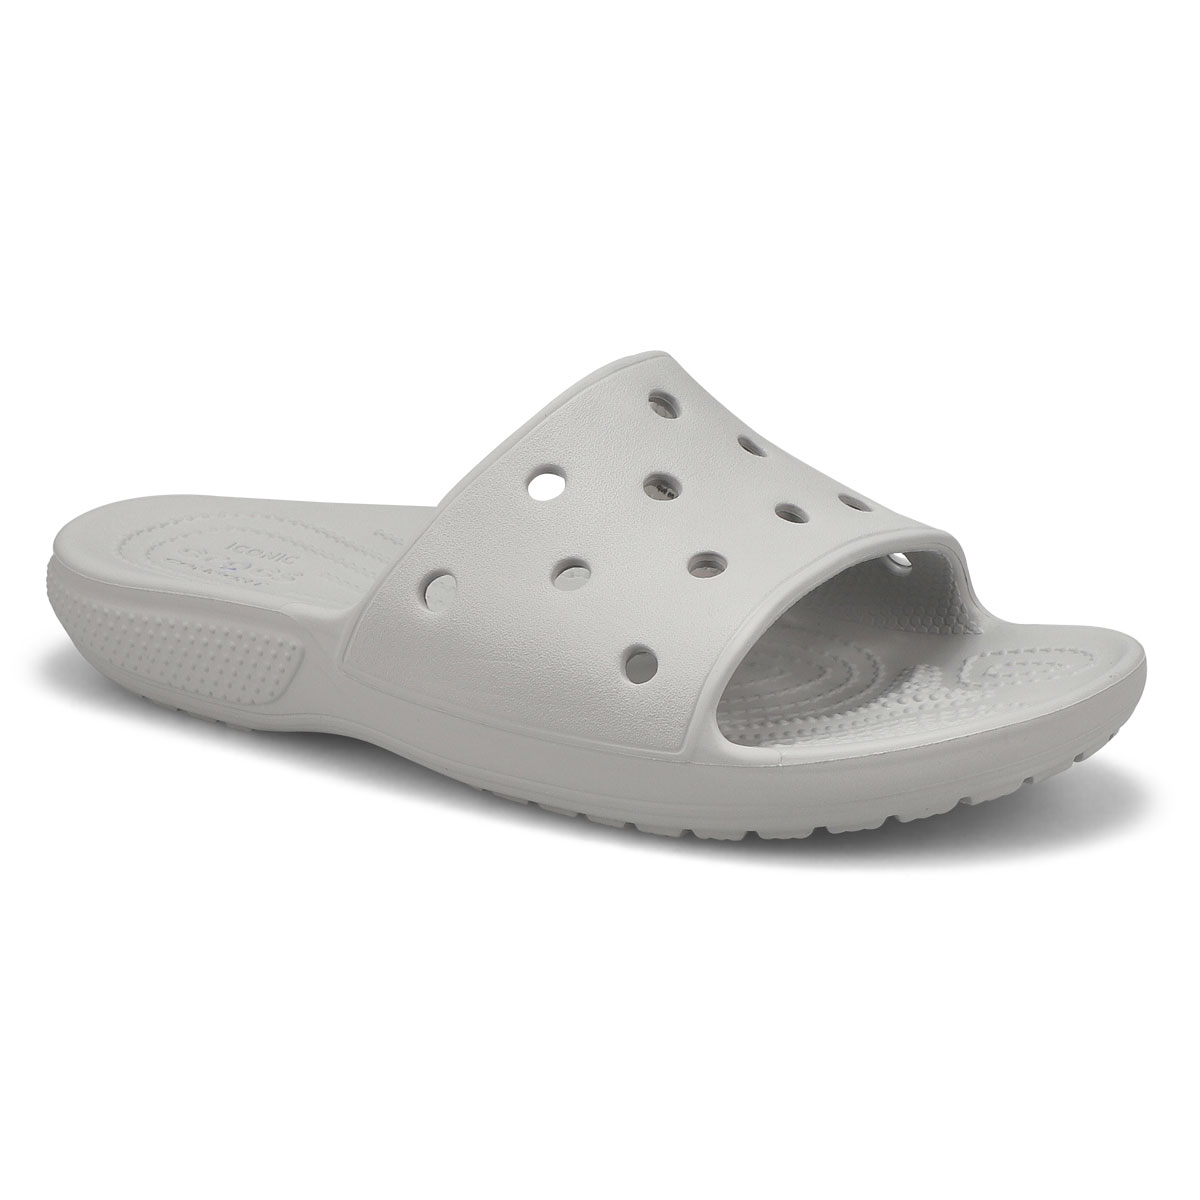 Crocs Women's Classic Crocs Slide Sandal | SoftMoc.com